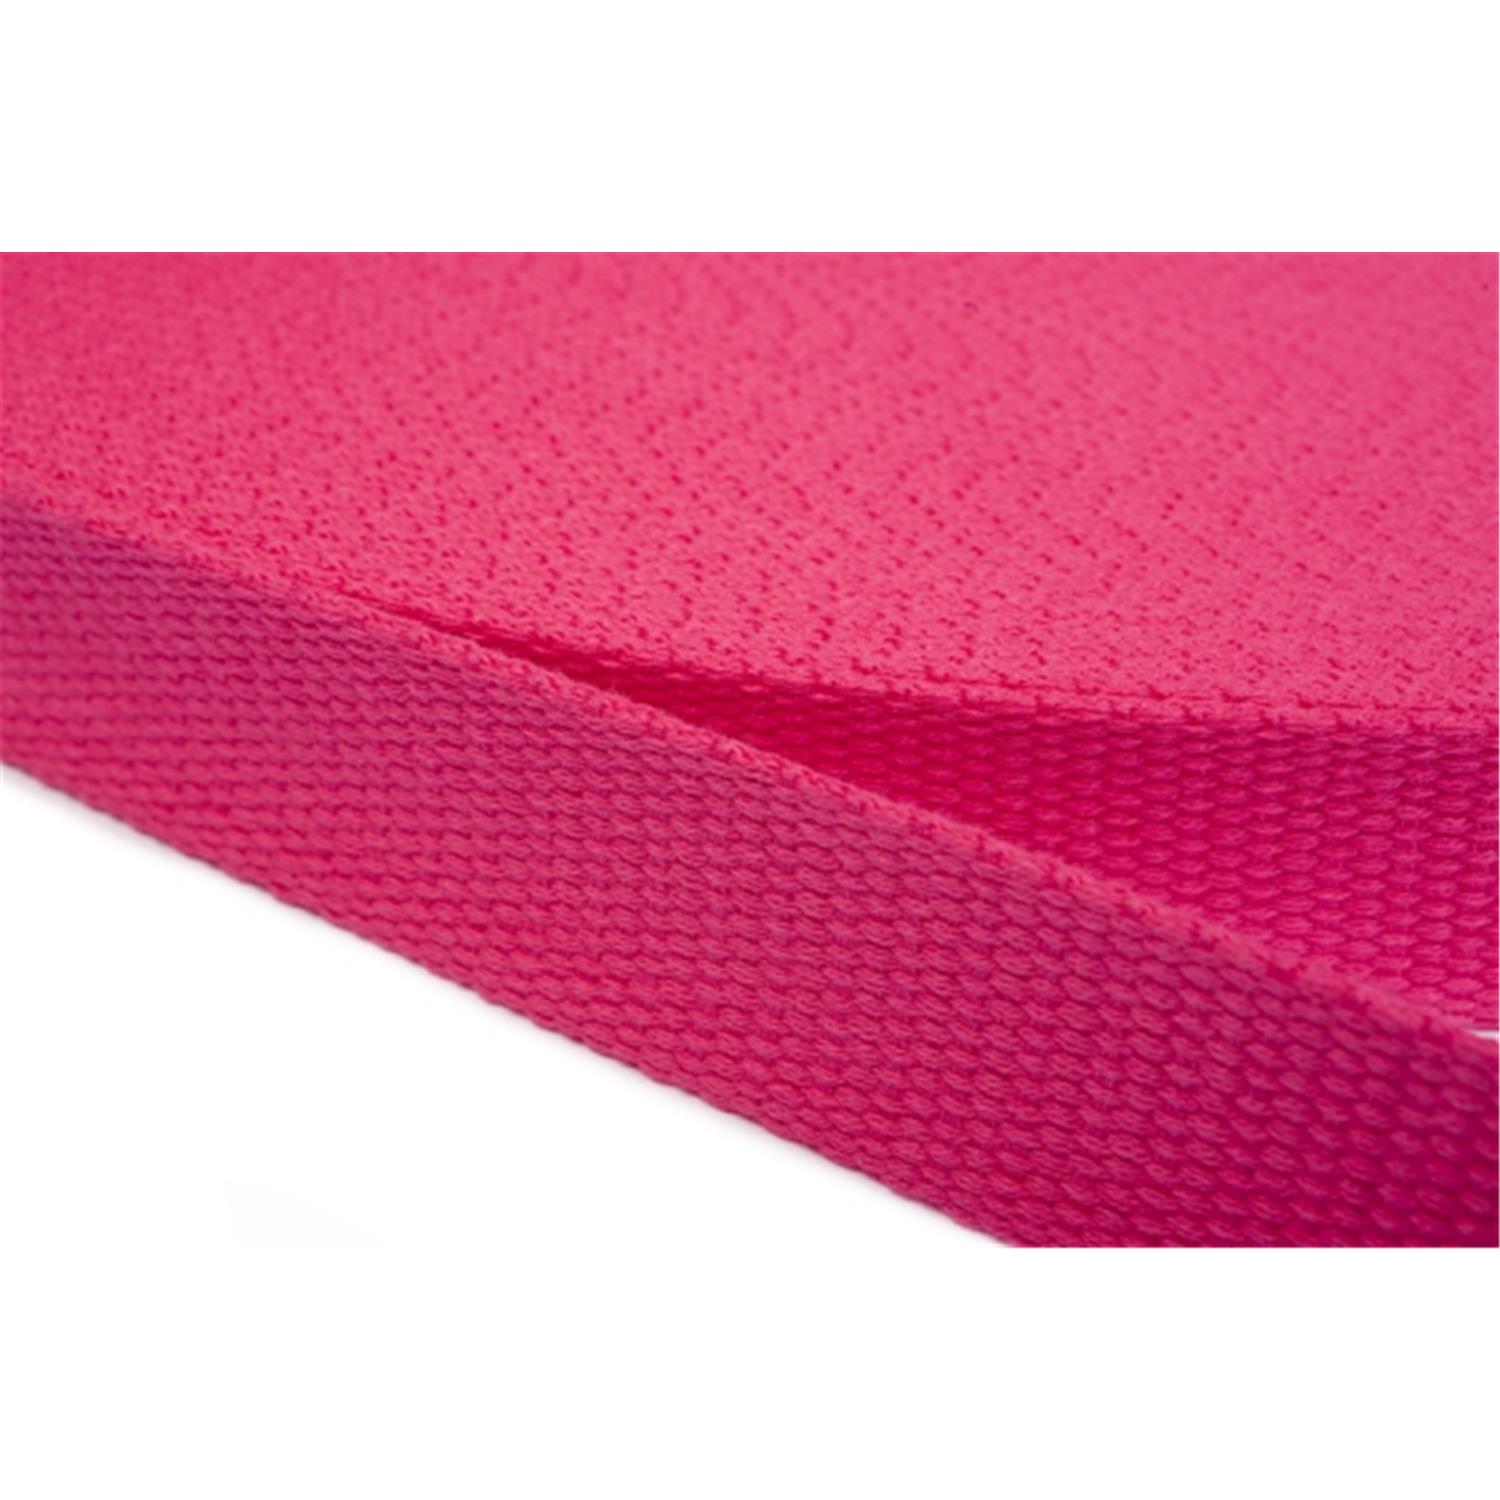 Gurtband aus Baumwolle 20mm in 20 Farben 07 - rosa/pink 12 Meter